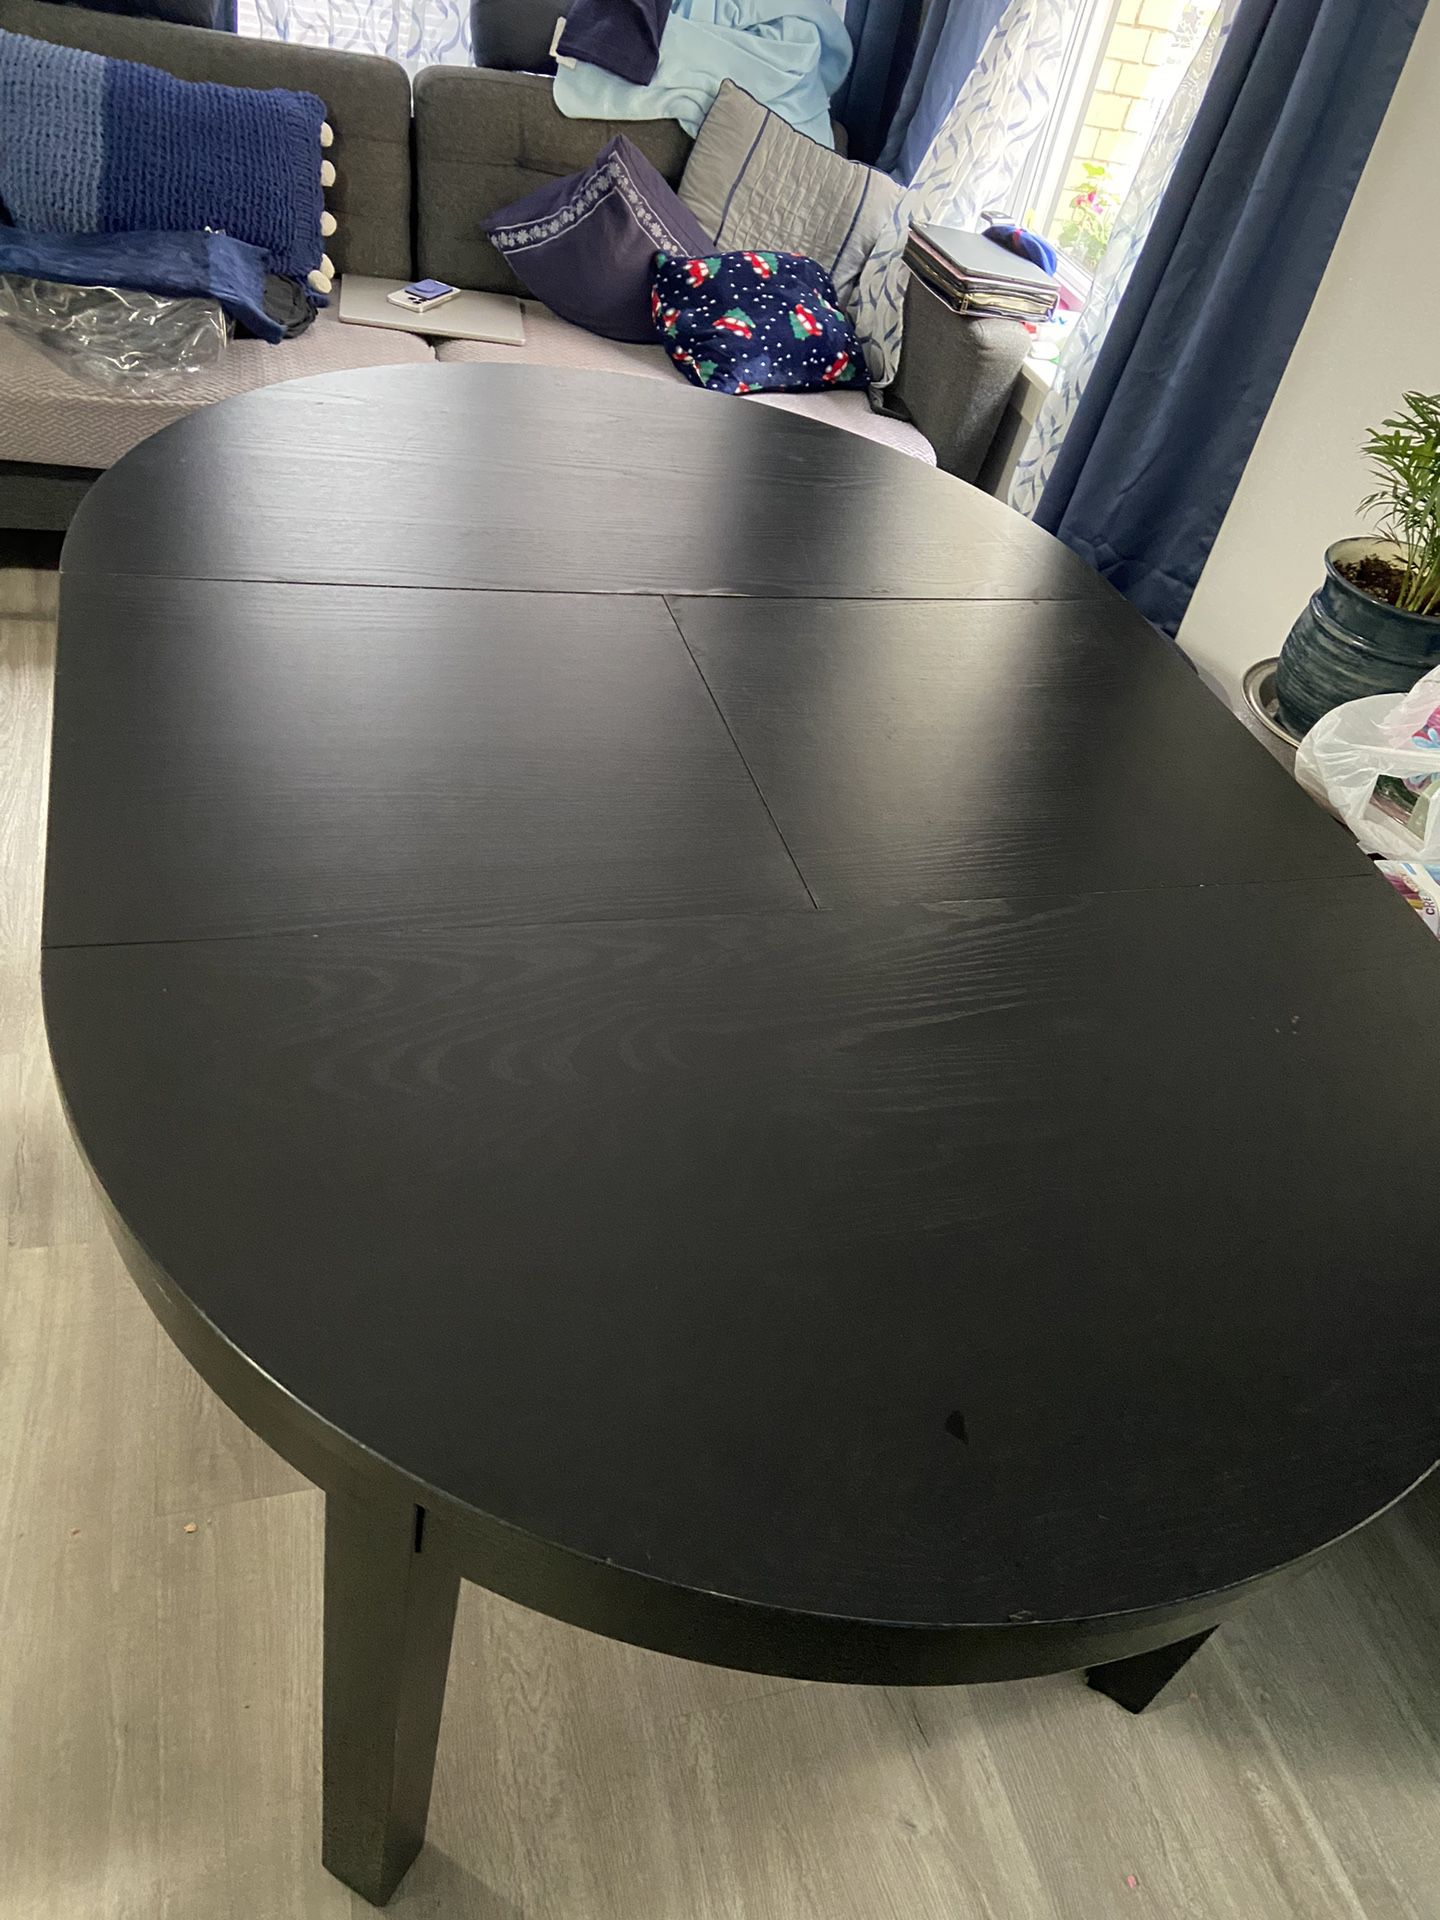 IKEA Kitchen Table